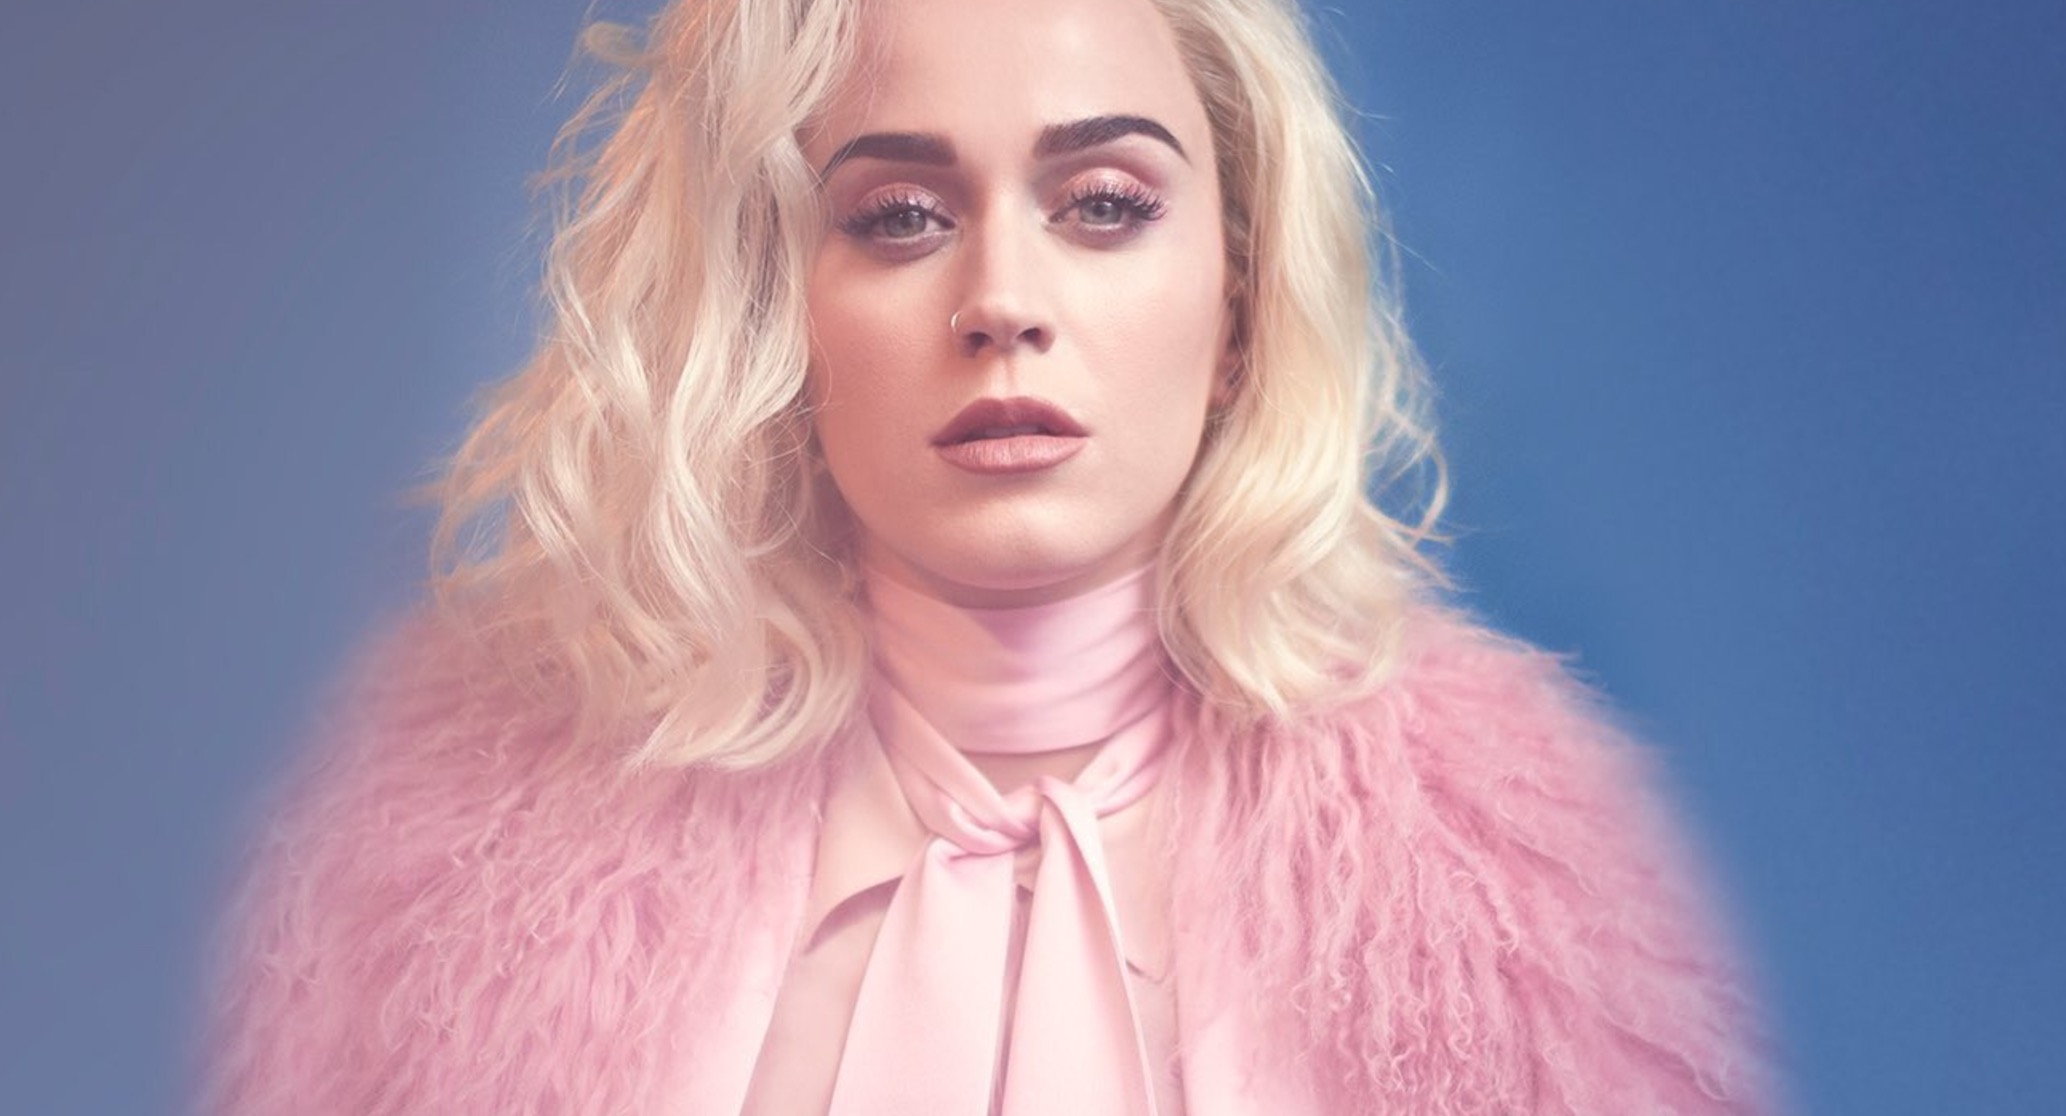  Katy Perry presentará su nuevo single, ‘Chained To The Rhythm’, en los Premios Grammy